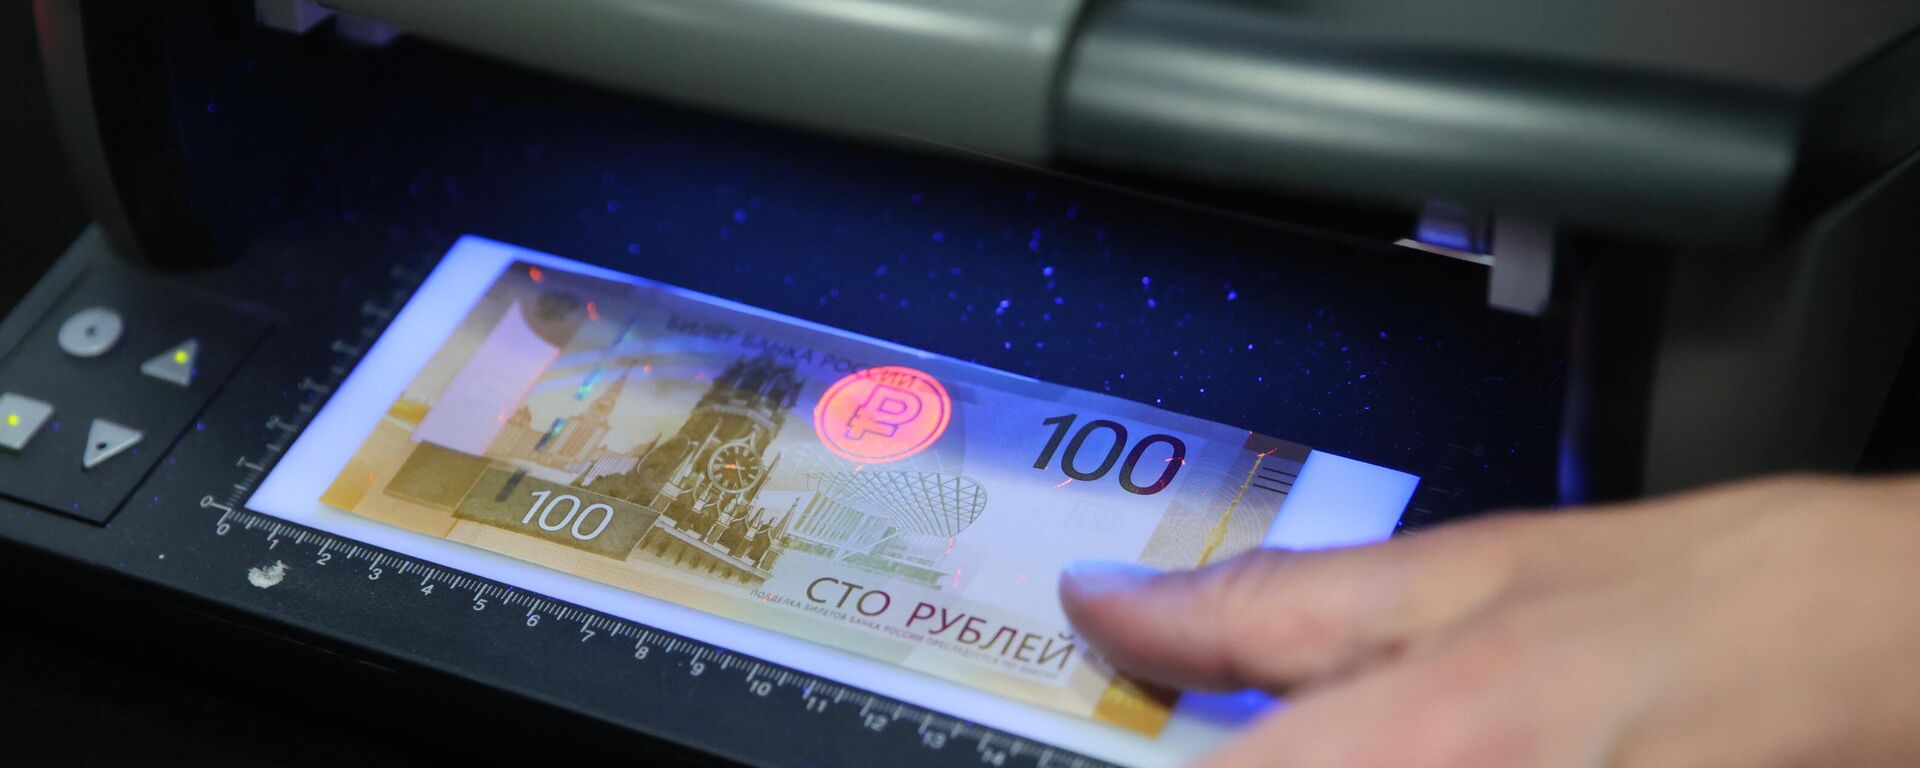 Nova nota de 100 rublos é exibida durante coletiva de imprensa em Moscou, na Rússia - Sputnik Brasil, 1920, 30.07.2023